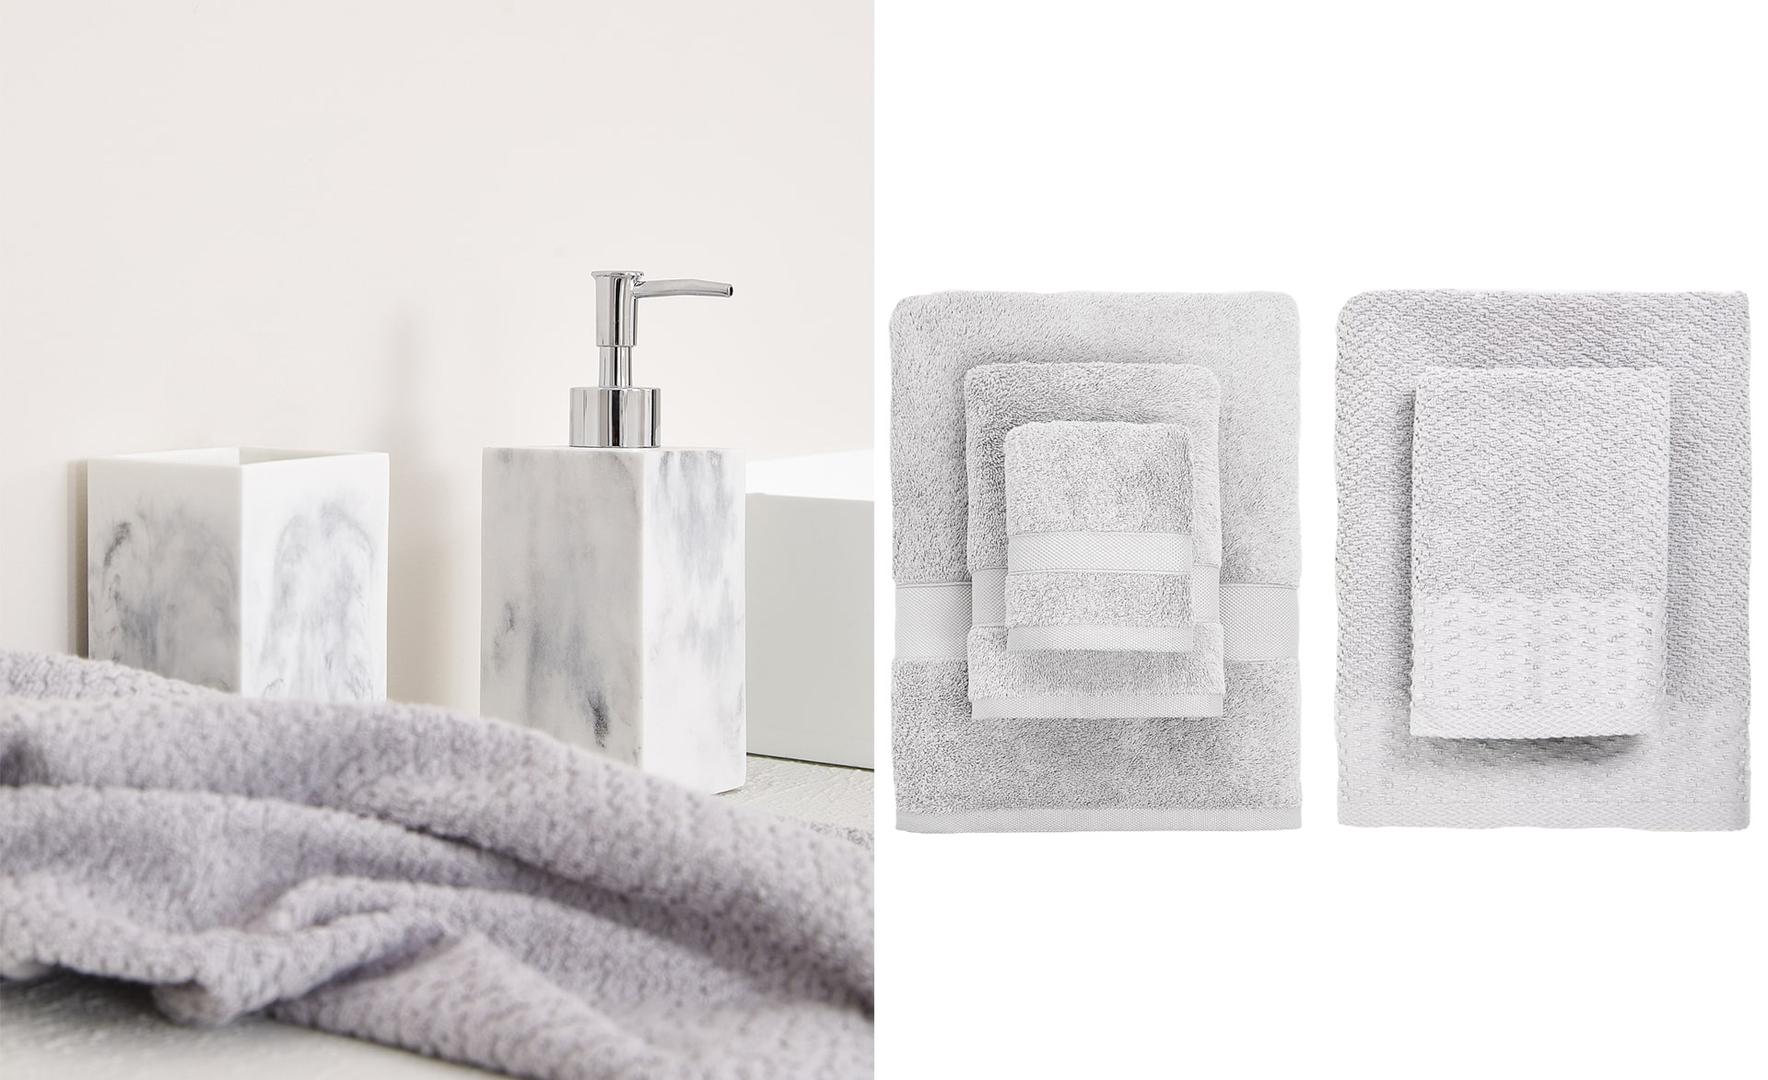 Da bi kupaonica bila elegantna pobrinut će se detalji koji vjerno imitiraju mramor